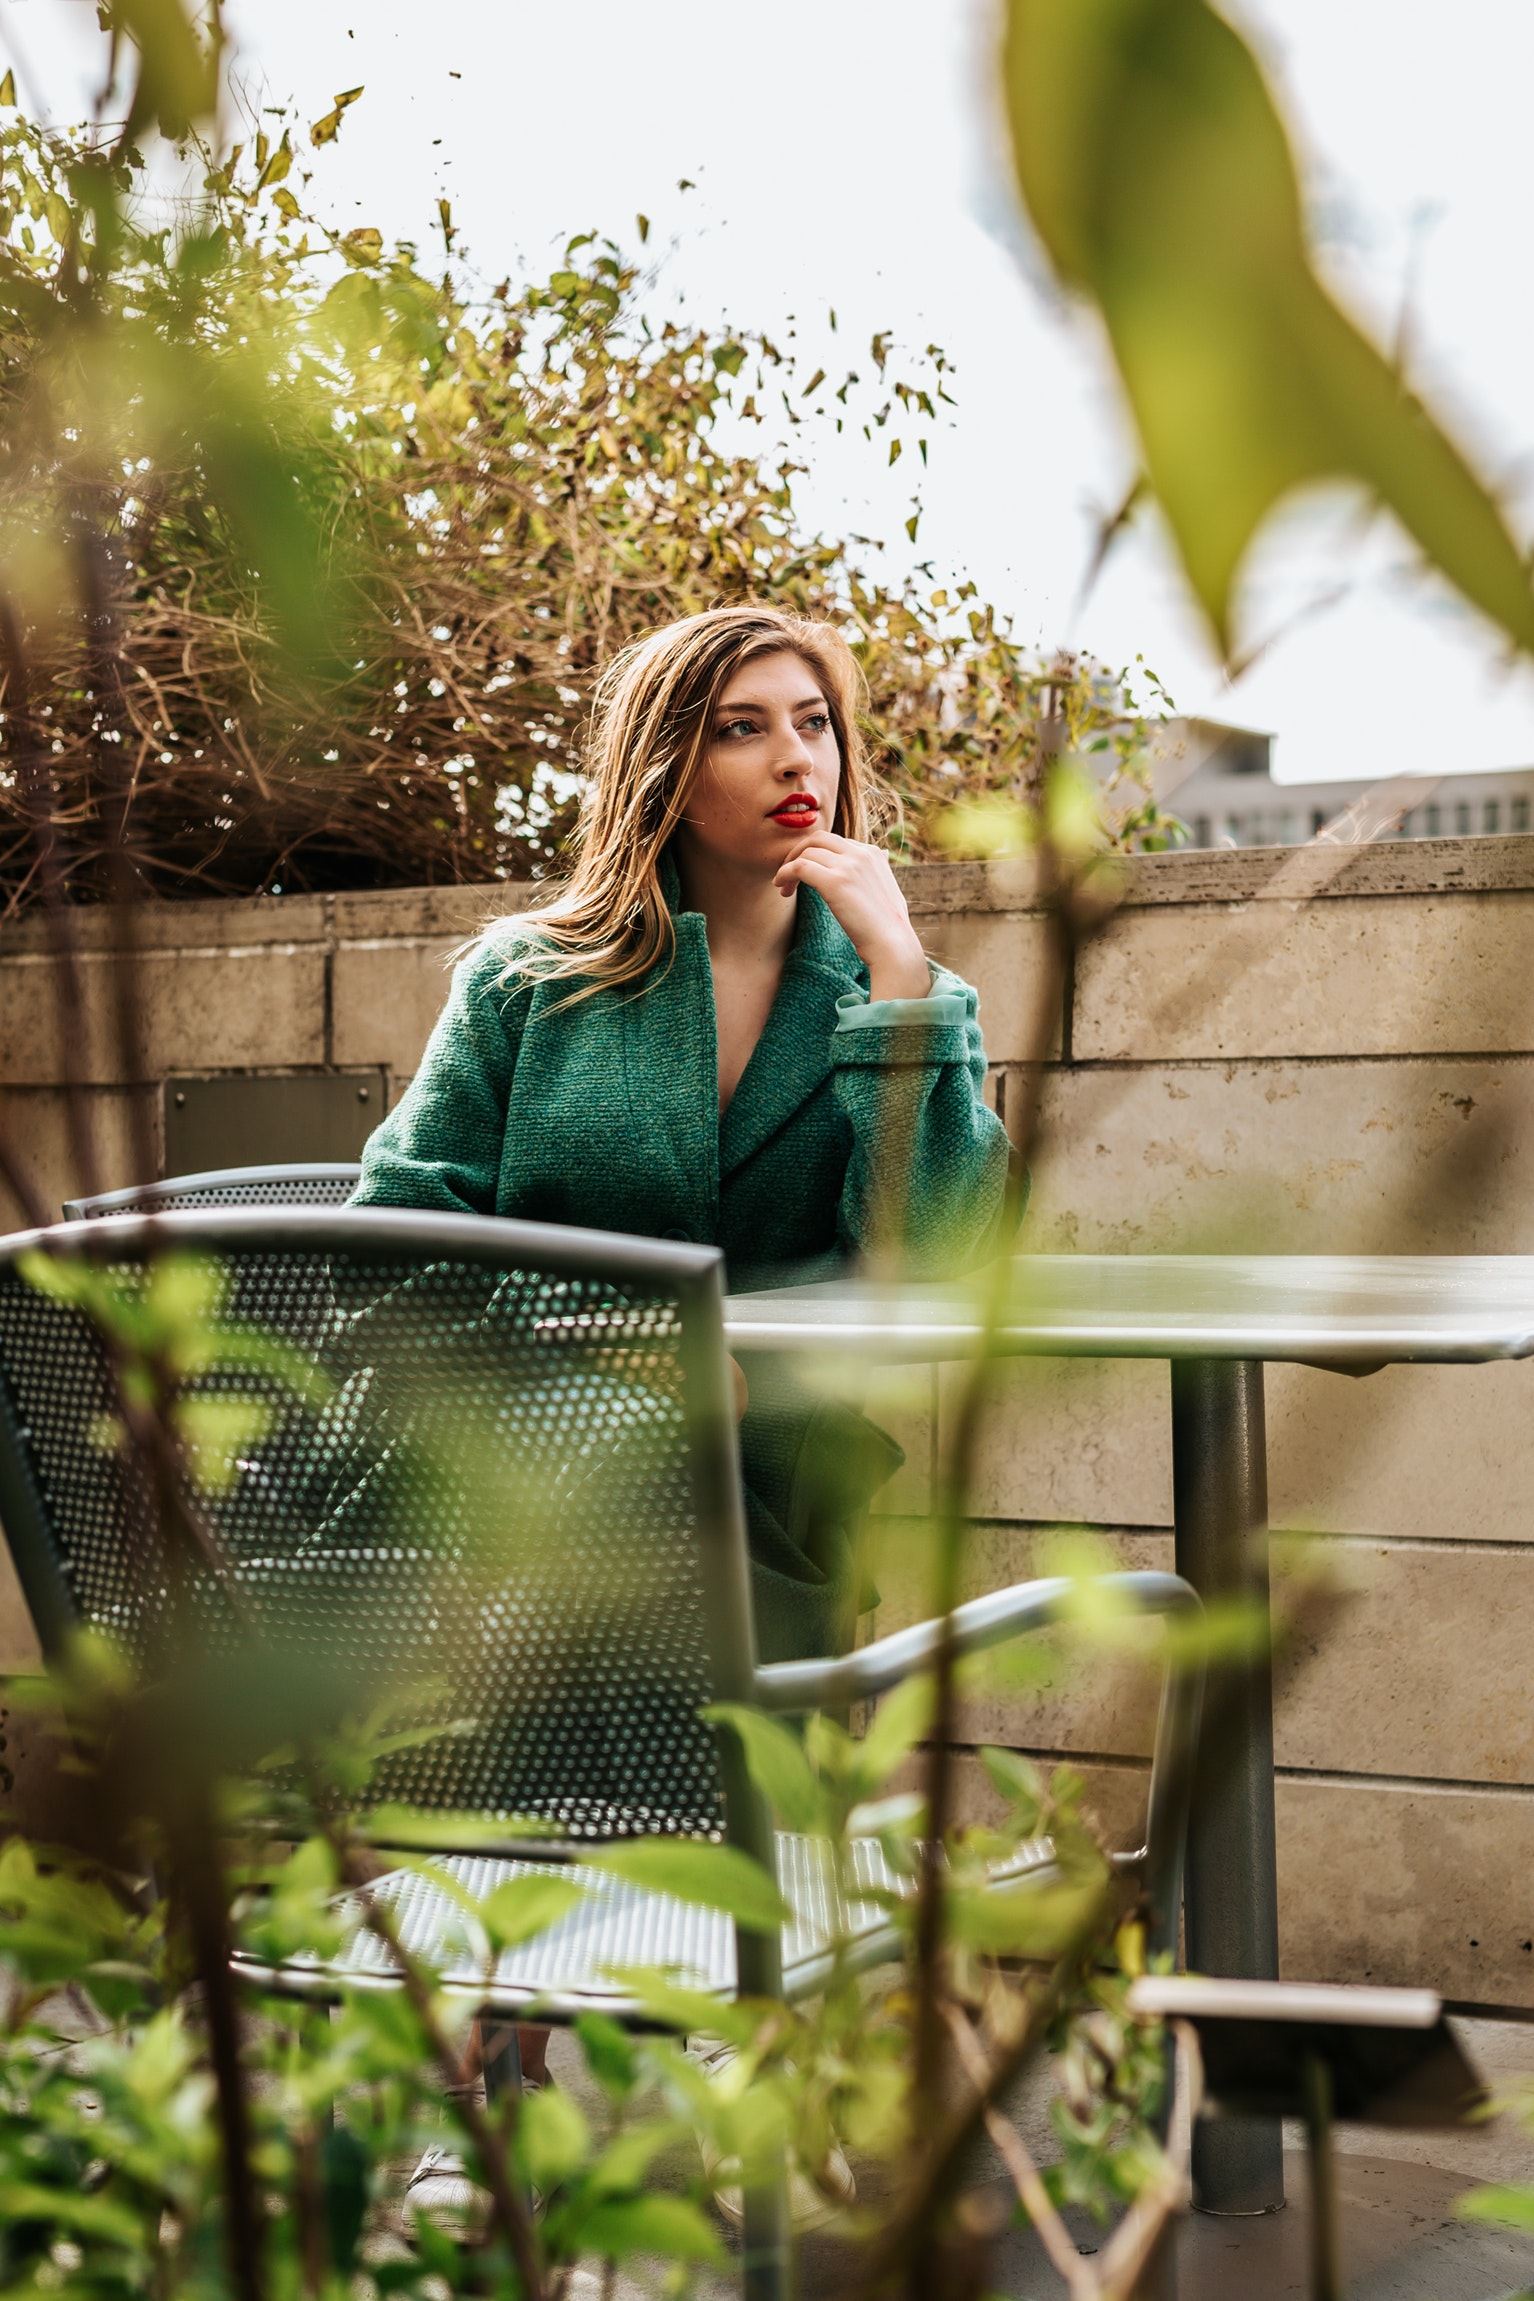 Vrouw met groen vest zit nadenkend op dakterras met planten